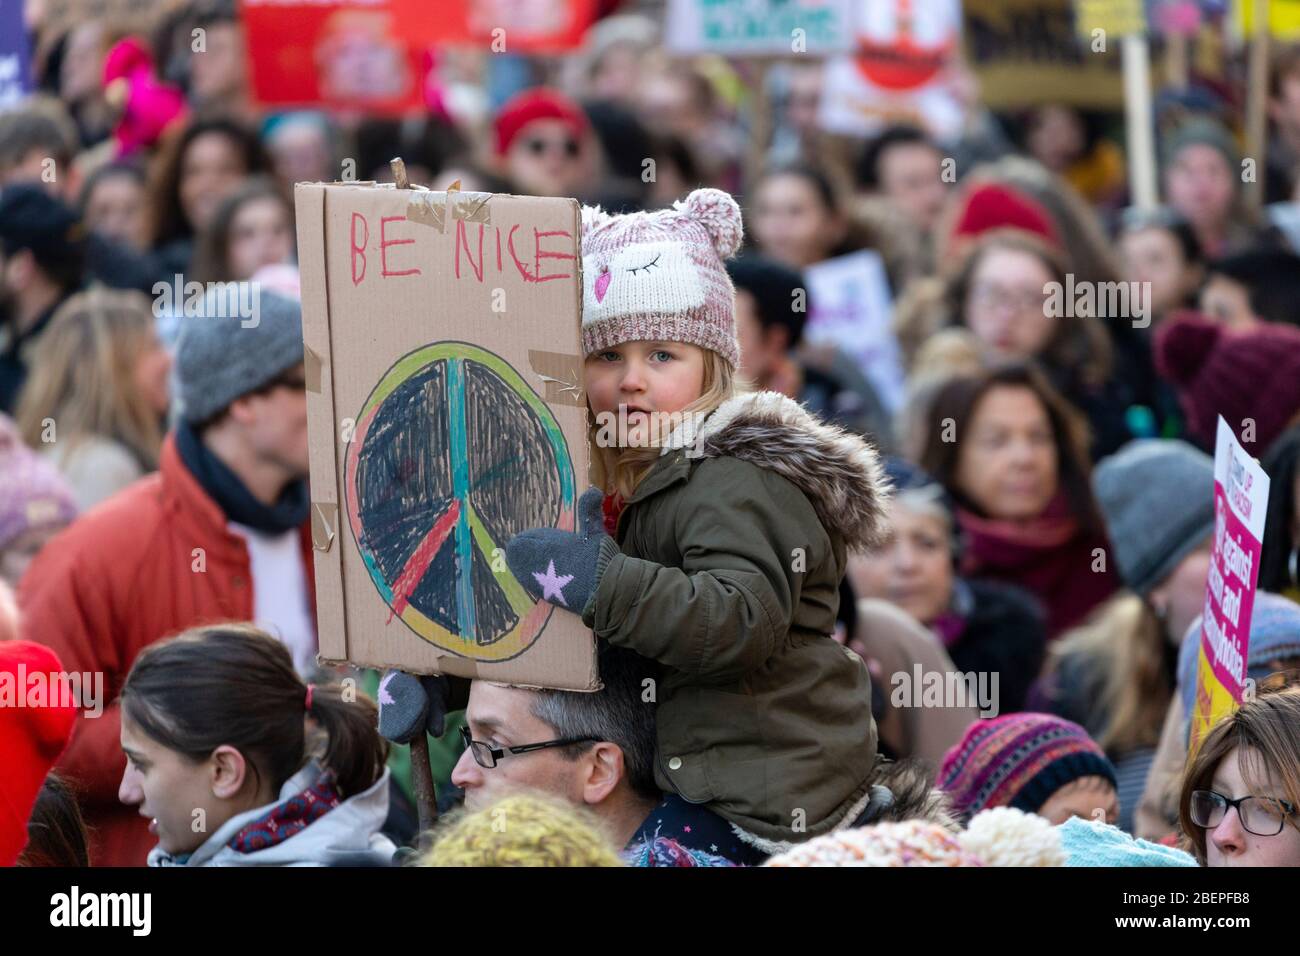 Jeune fille assise sur les épaules d'un homme et tenant une lecture de signe "Be Nice", à la Marche des femmes 2017, Londres Banque D'Images